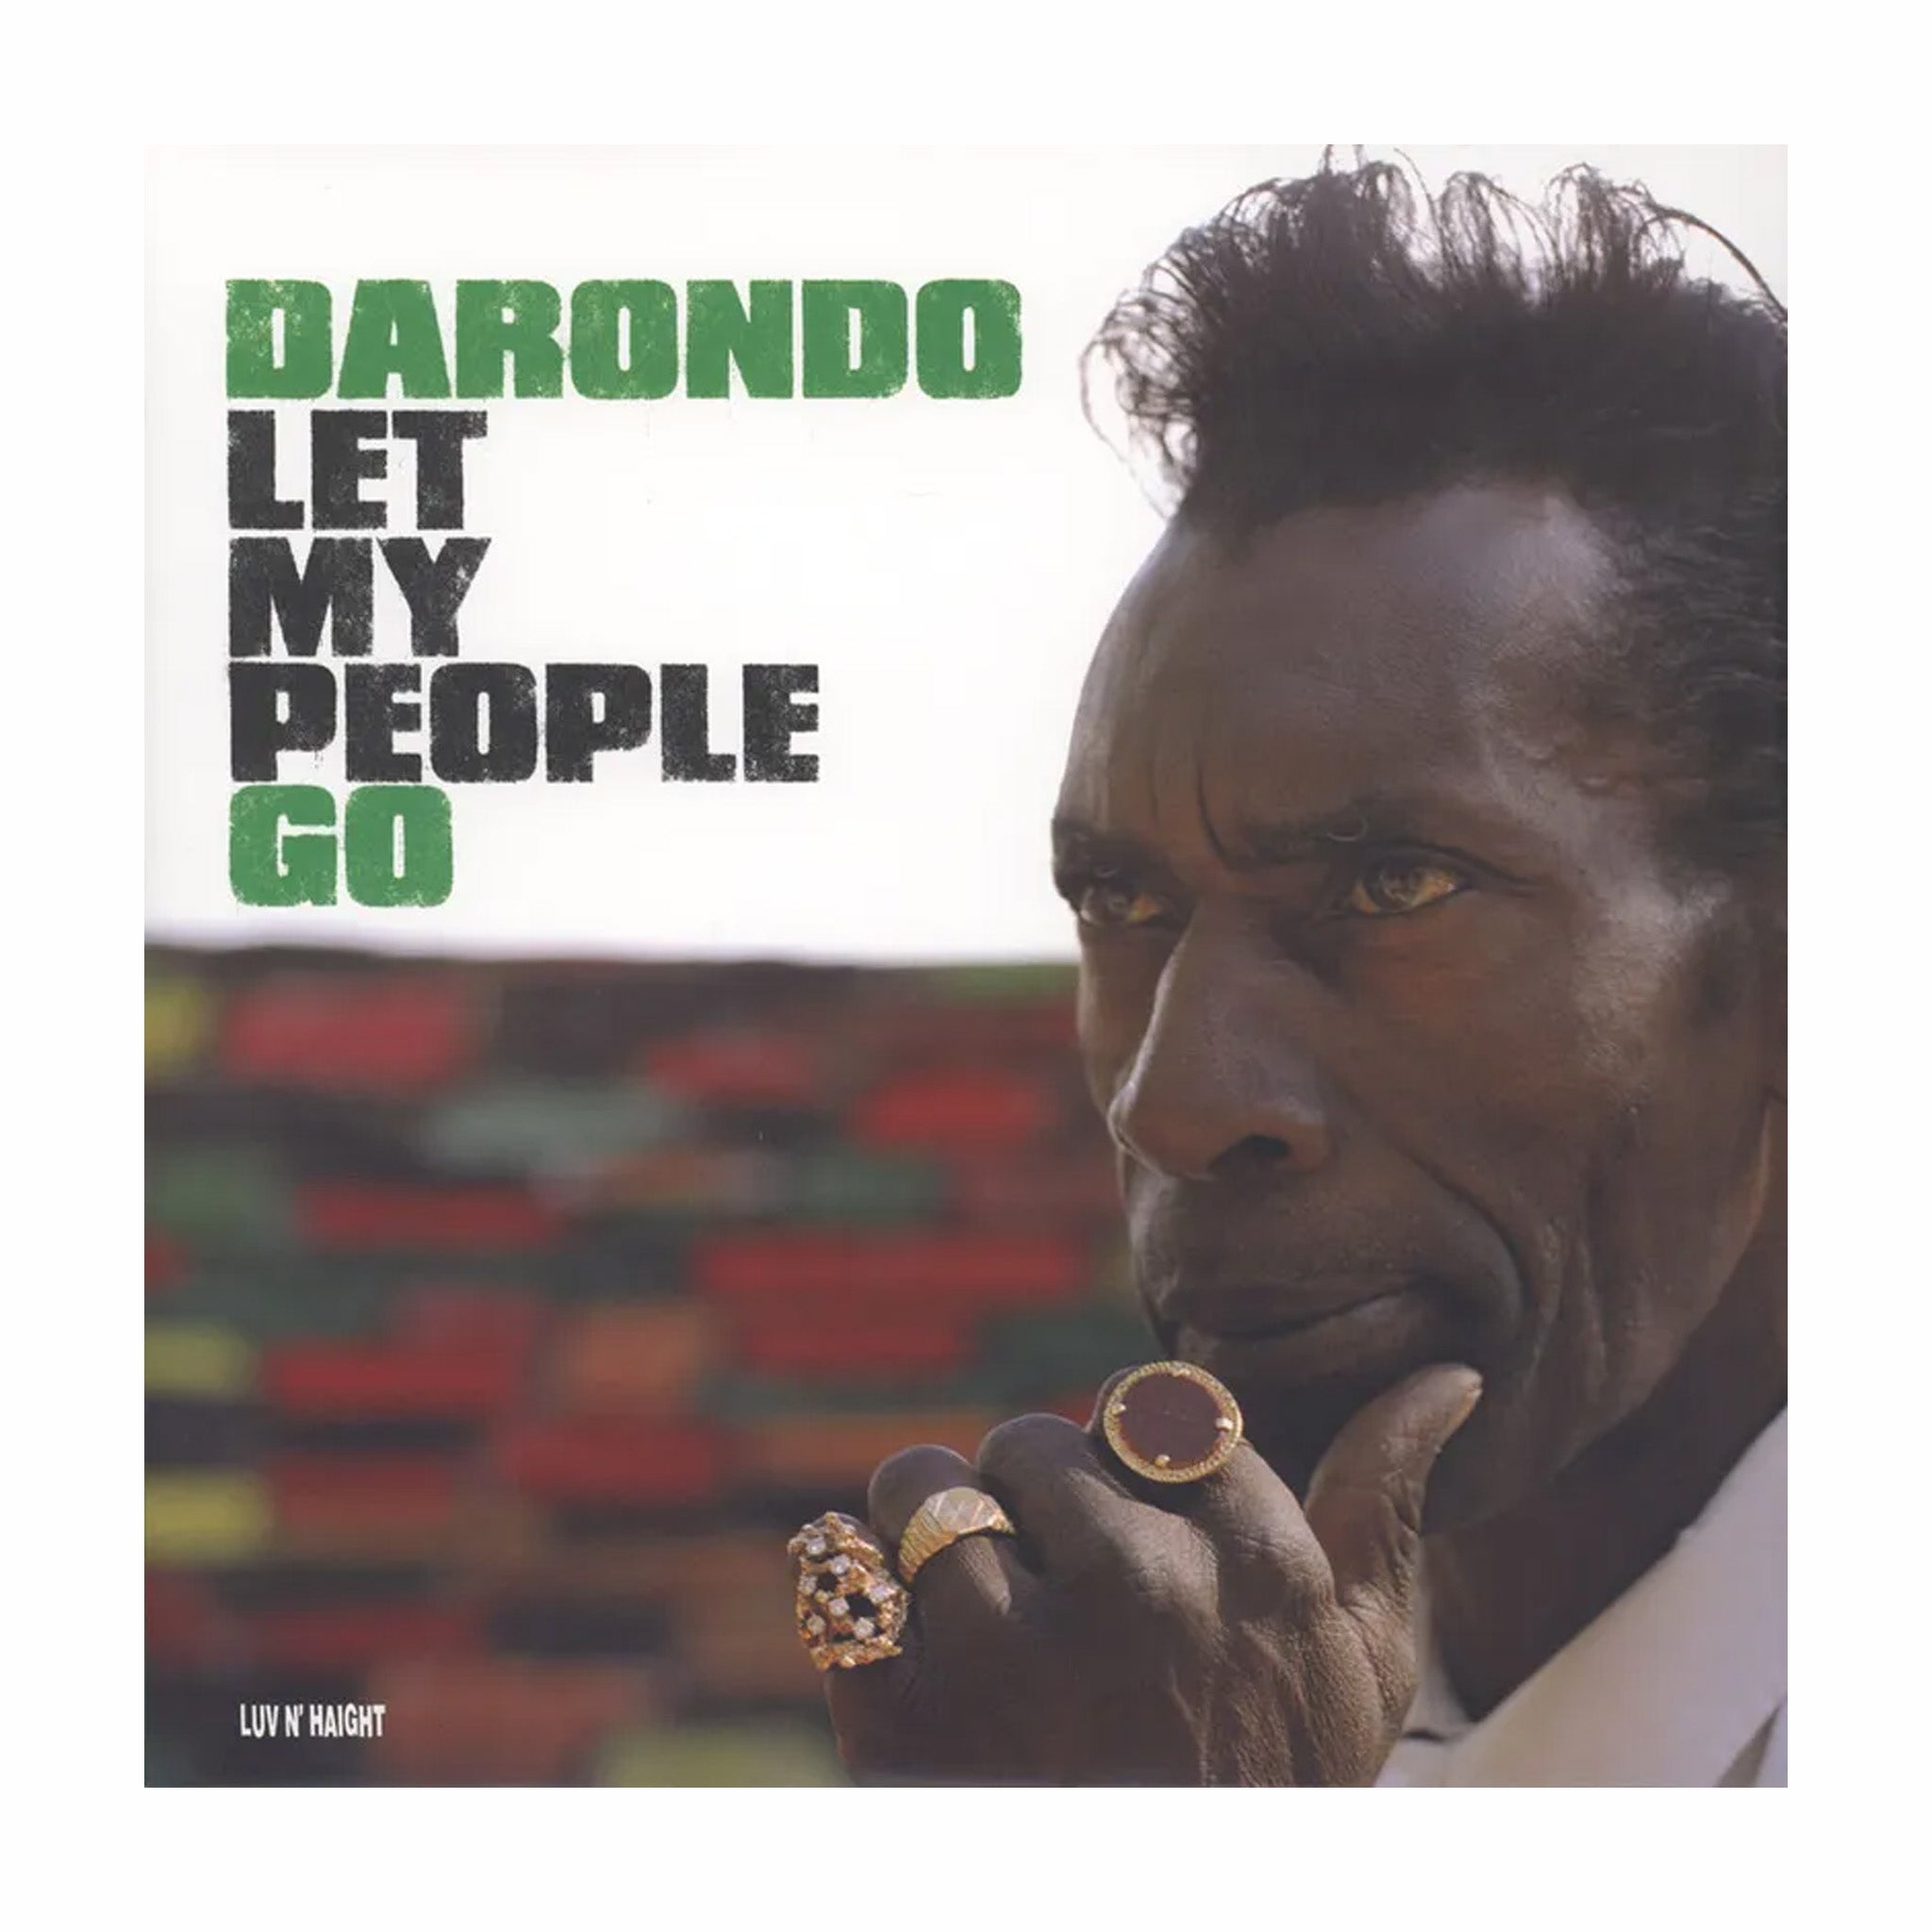 In vinile, Darondo "Let My People Go" (ristampa in vinile 180g) LP